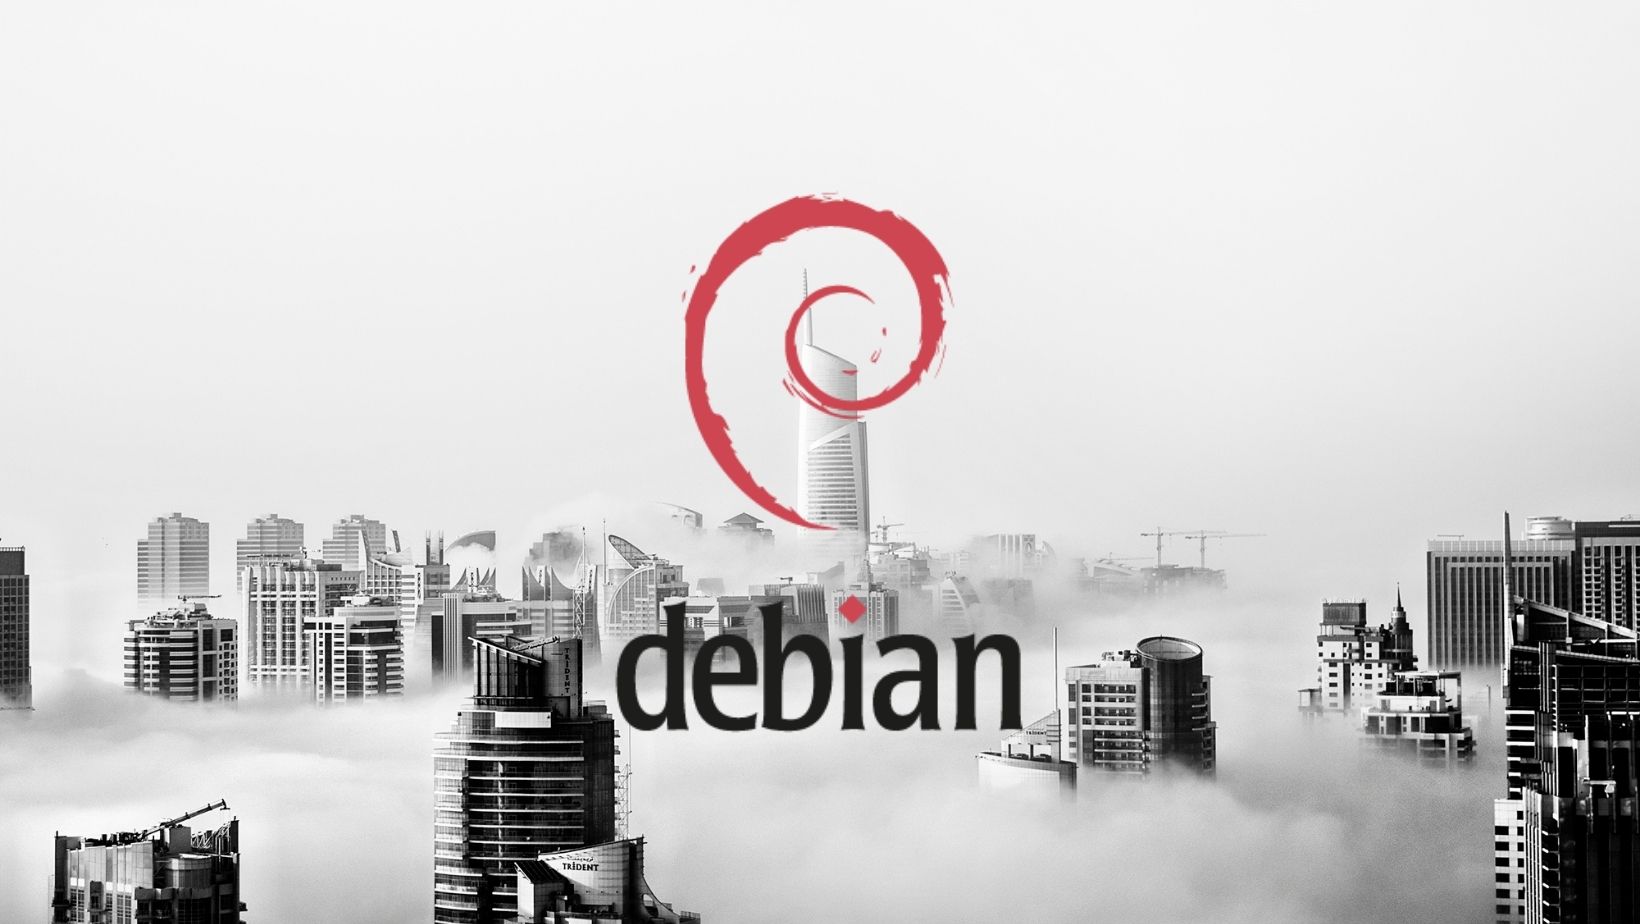 Mi a Debian Linux? Részletes betekintés...